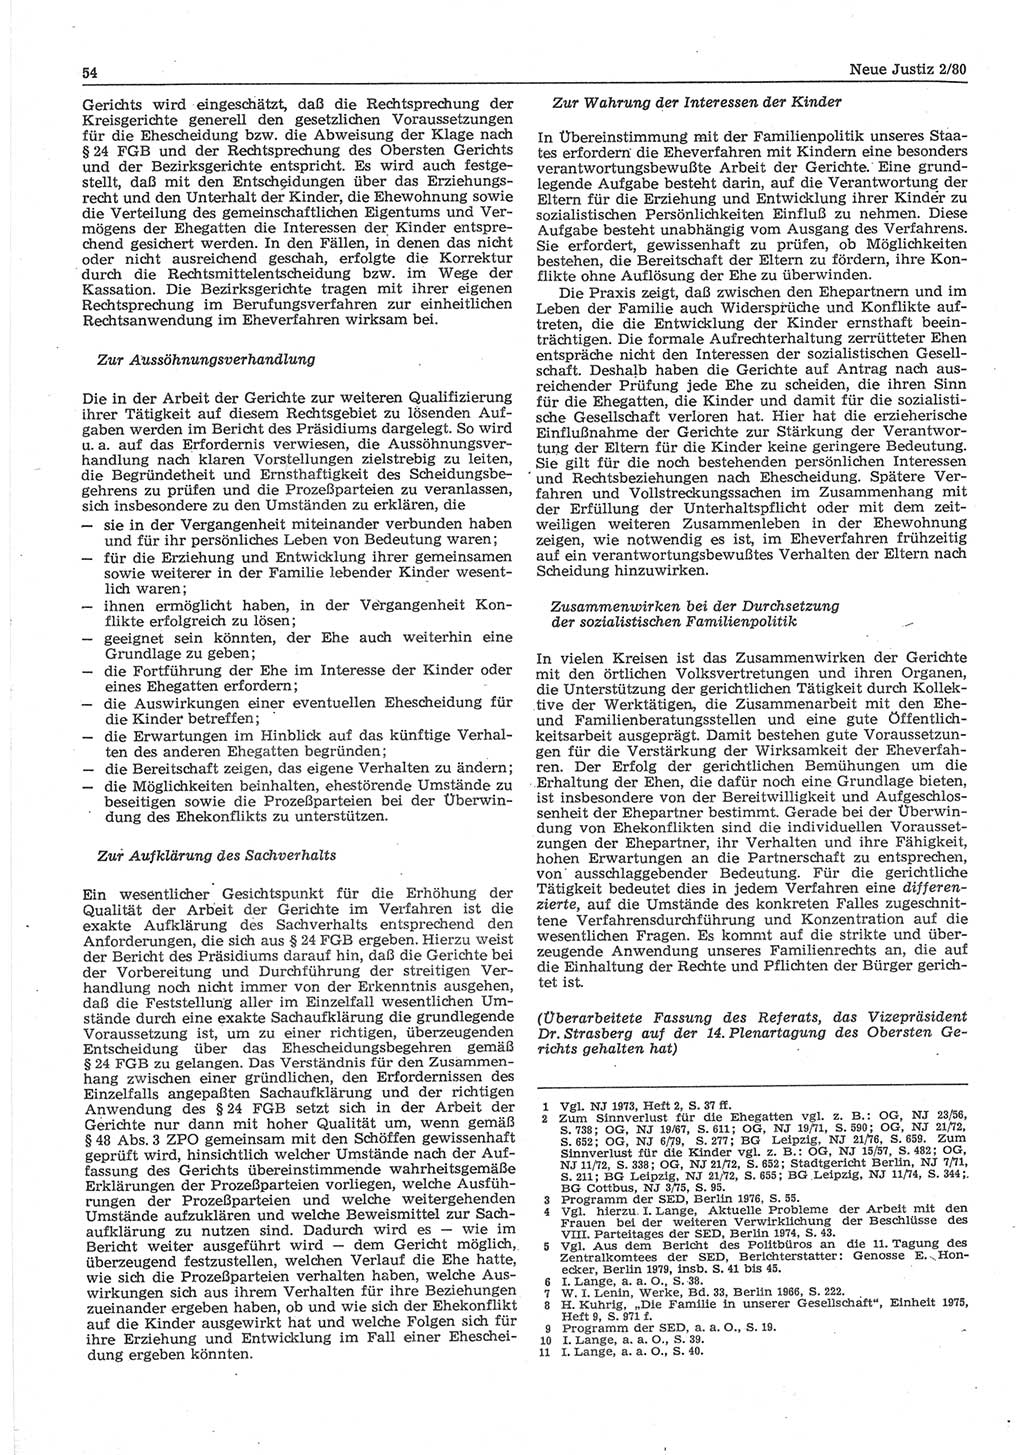 Neue Justiz (NJ), Zeitschrift für sozialistisches Recht und Gesetzlichkeit [Deutsche Demokratische Republik (DDR)], 34. Jahrgang 1980, Seite 54 (NJ DDR 1980, S. 54)